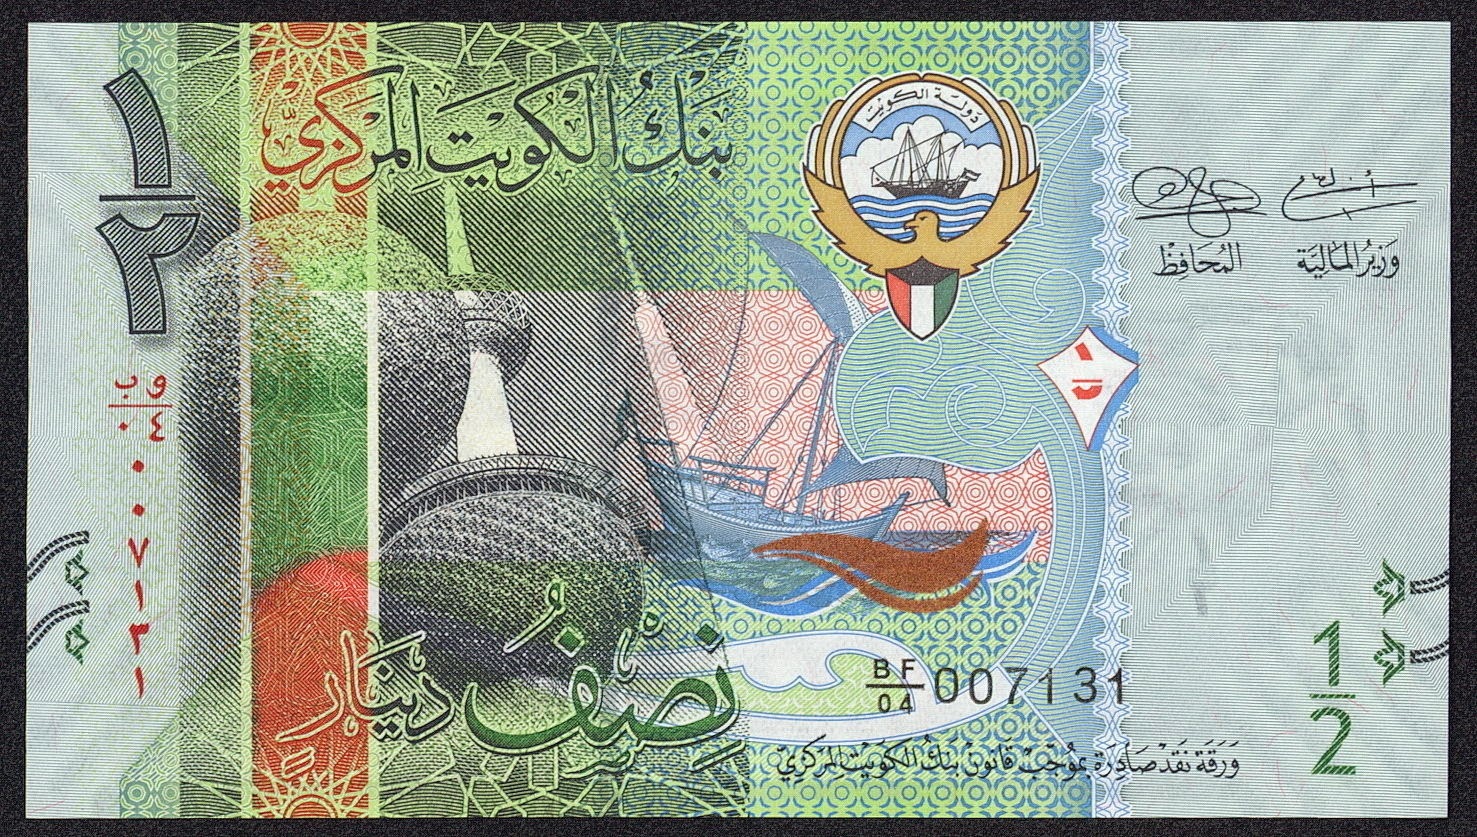 Kuwait New Banknotes Half Dinar bank note 2014